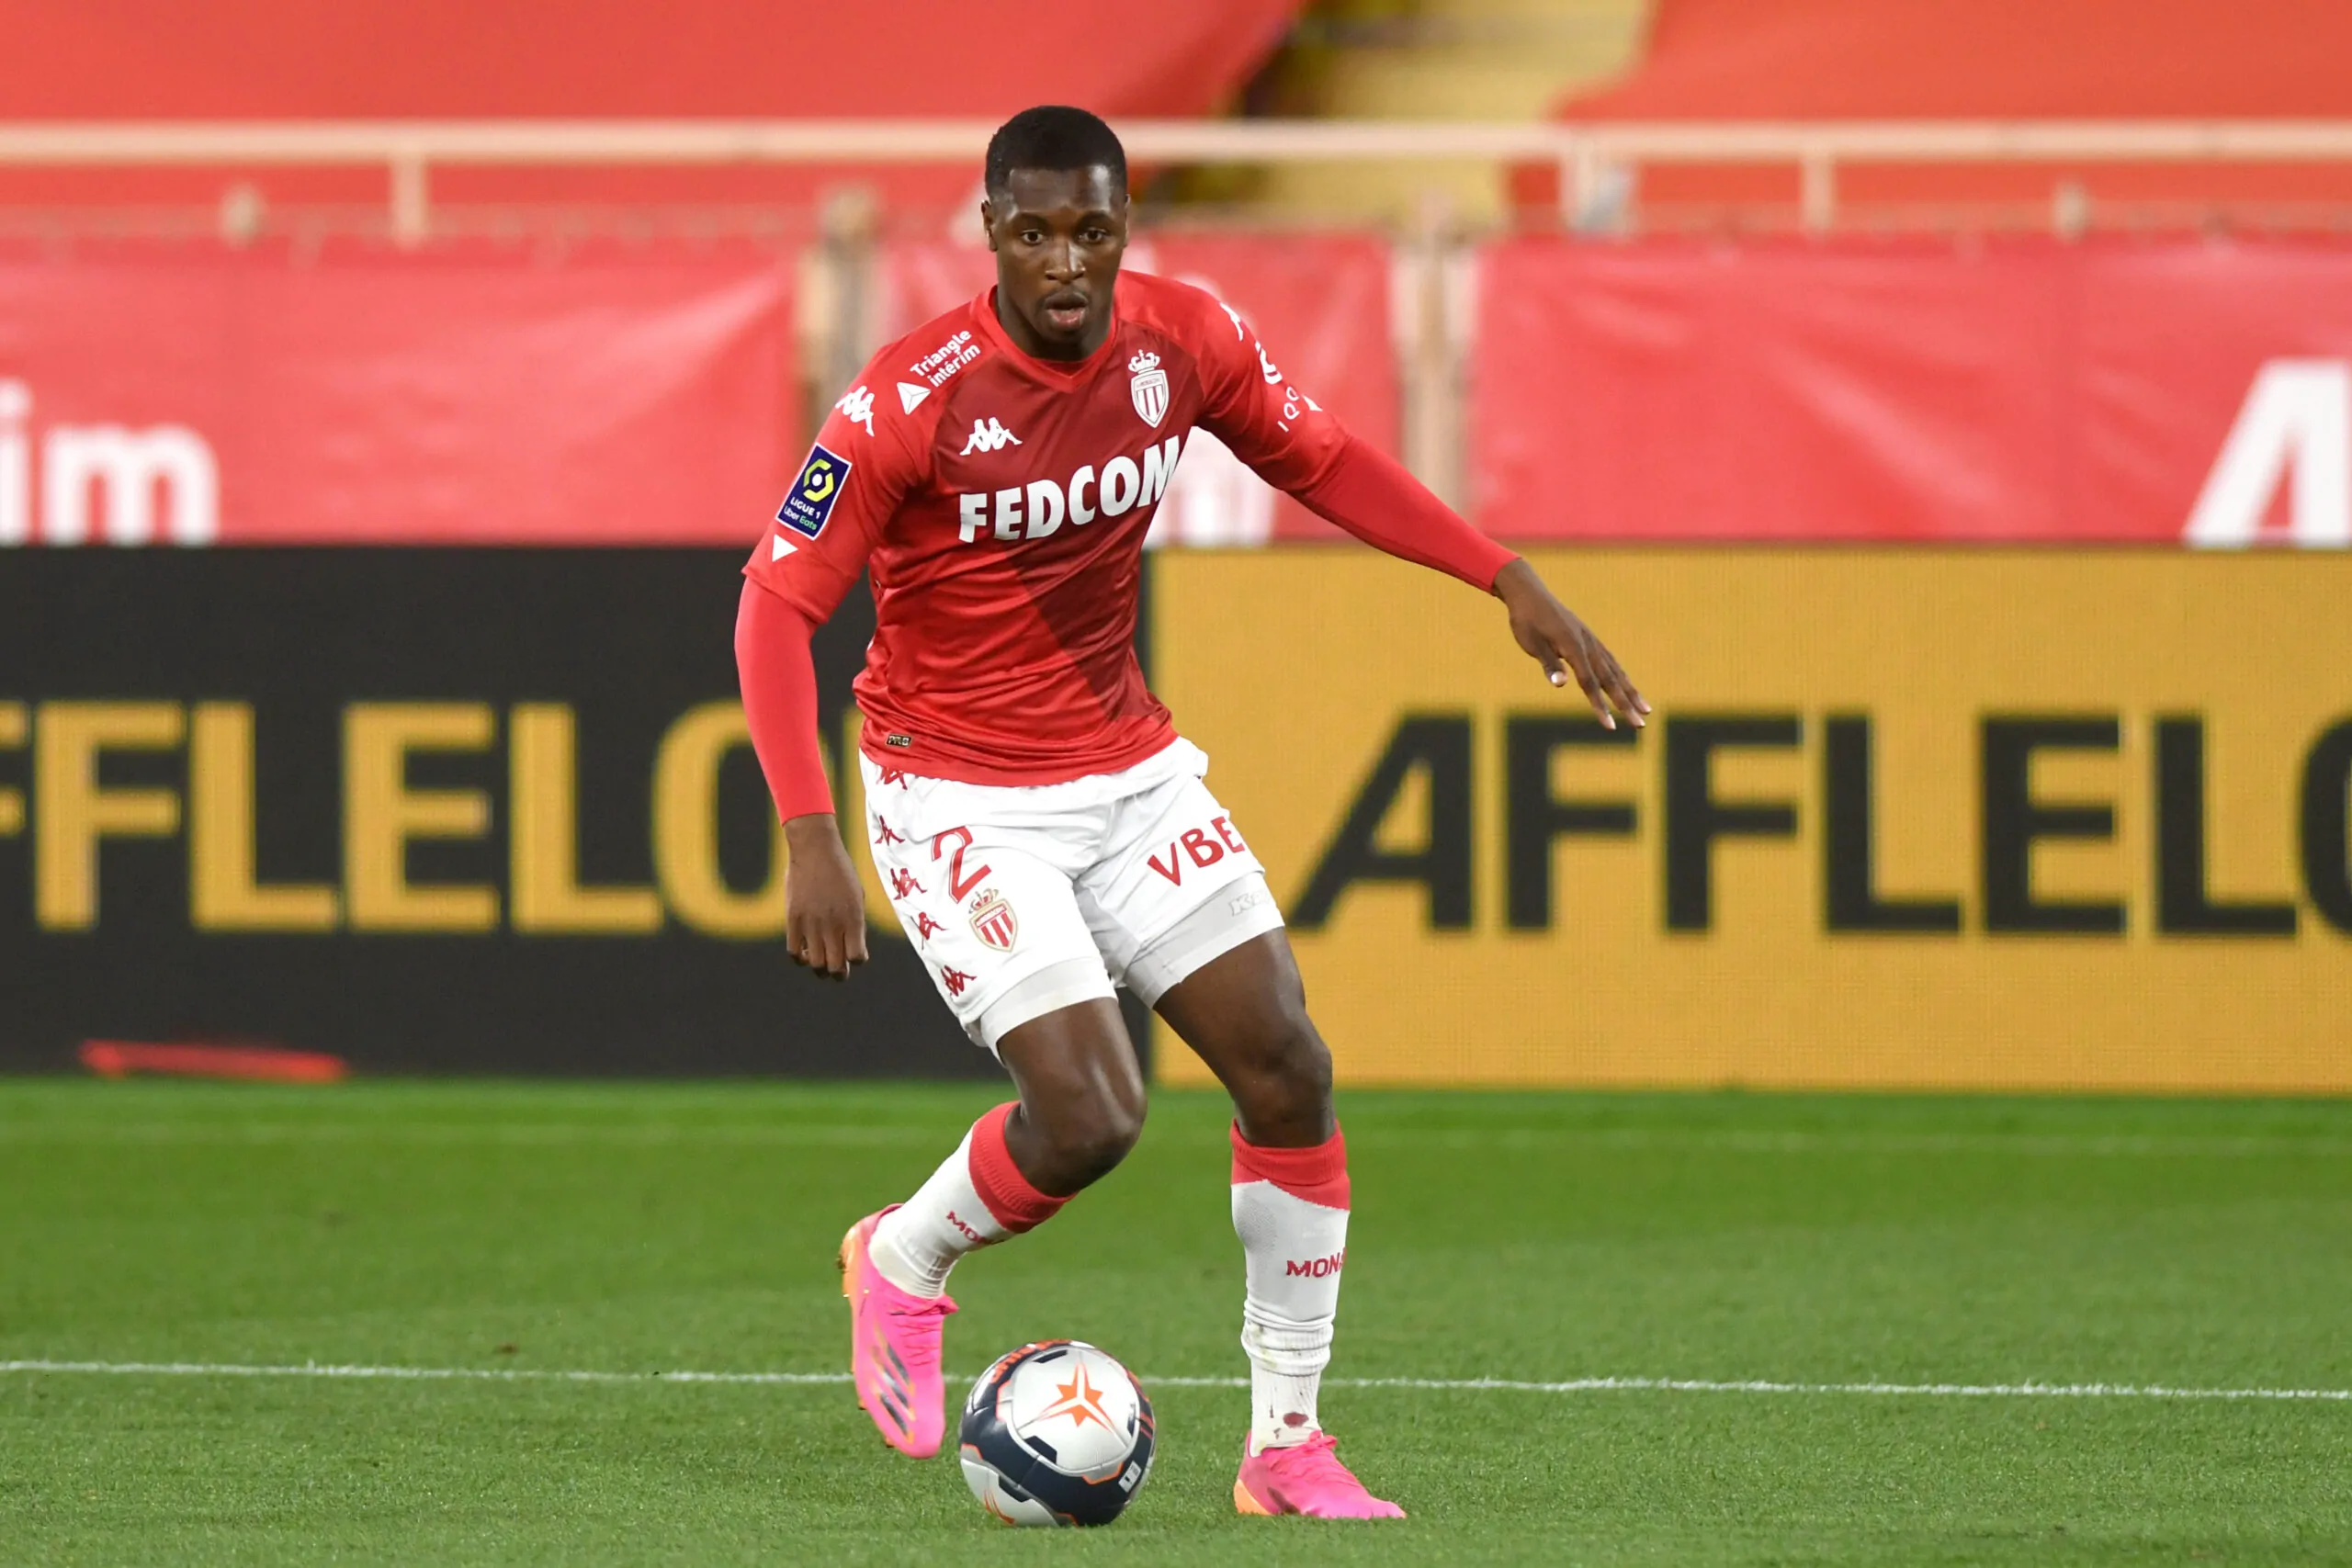 Accordo raggiunto: Fodé Ballo-Touré vestirà la maglia rossonera